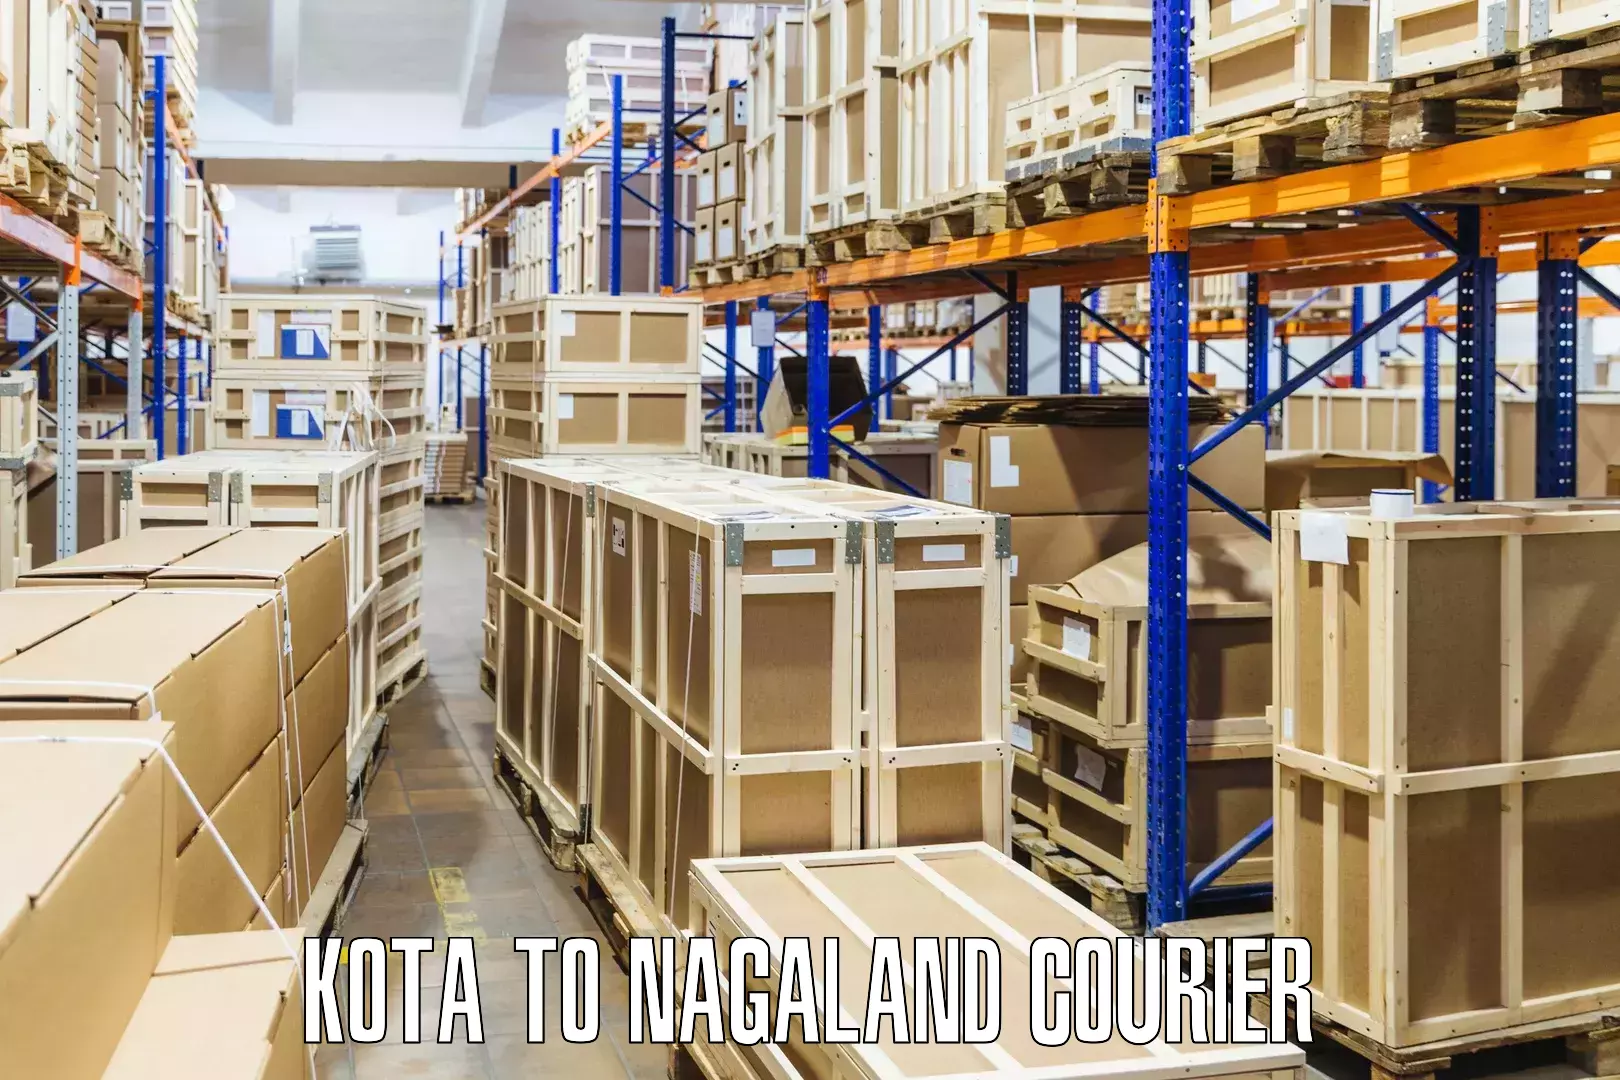 Premium delivery services Kota to Wokha